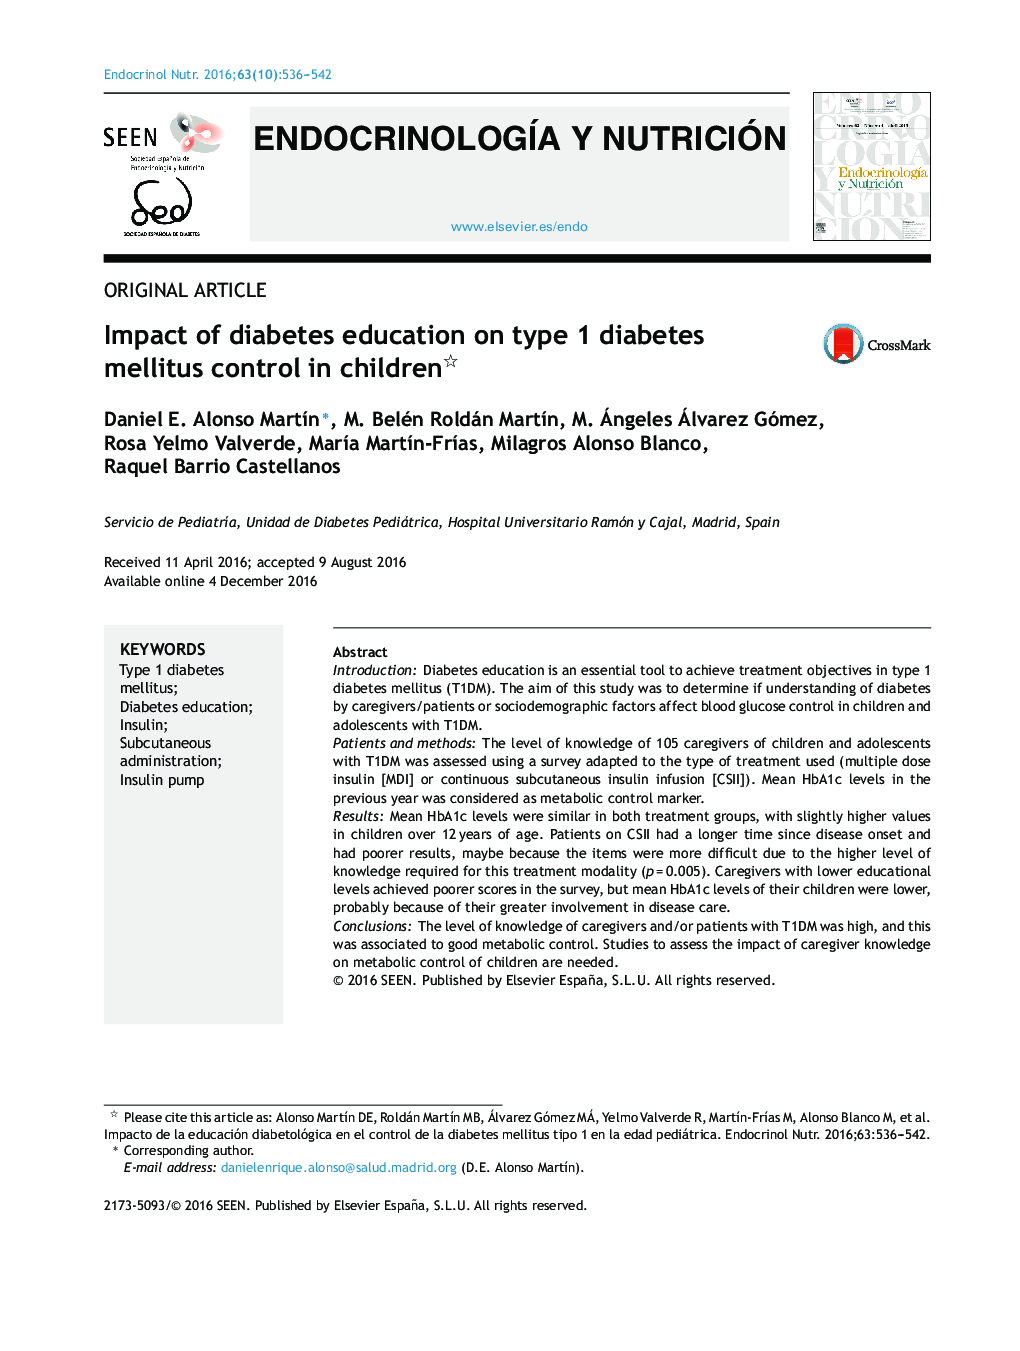 تأثیر آموزش دیابت بر کنترل دیابت نوع 1 در کودکان 